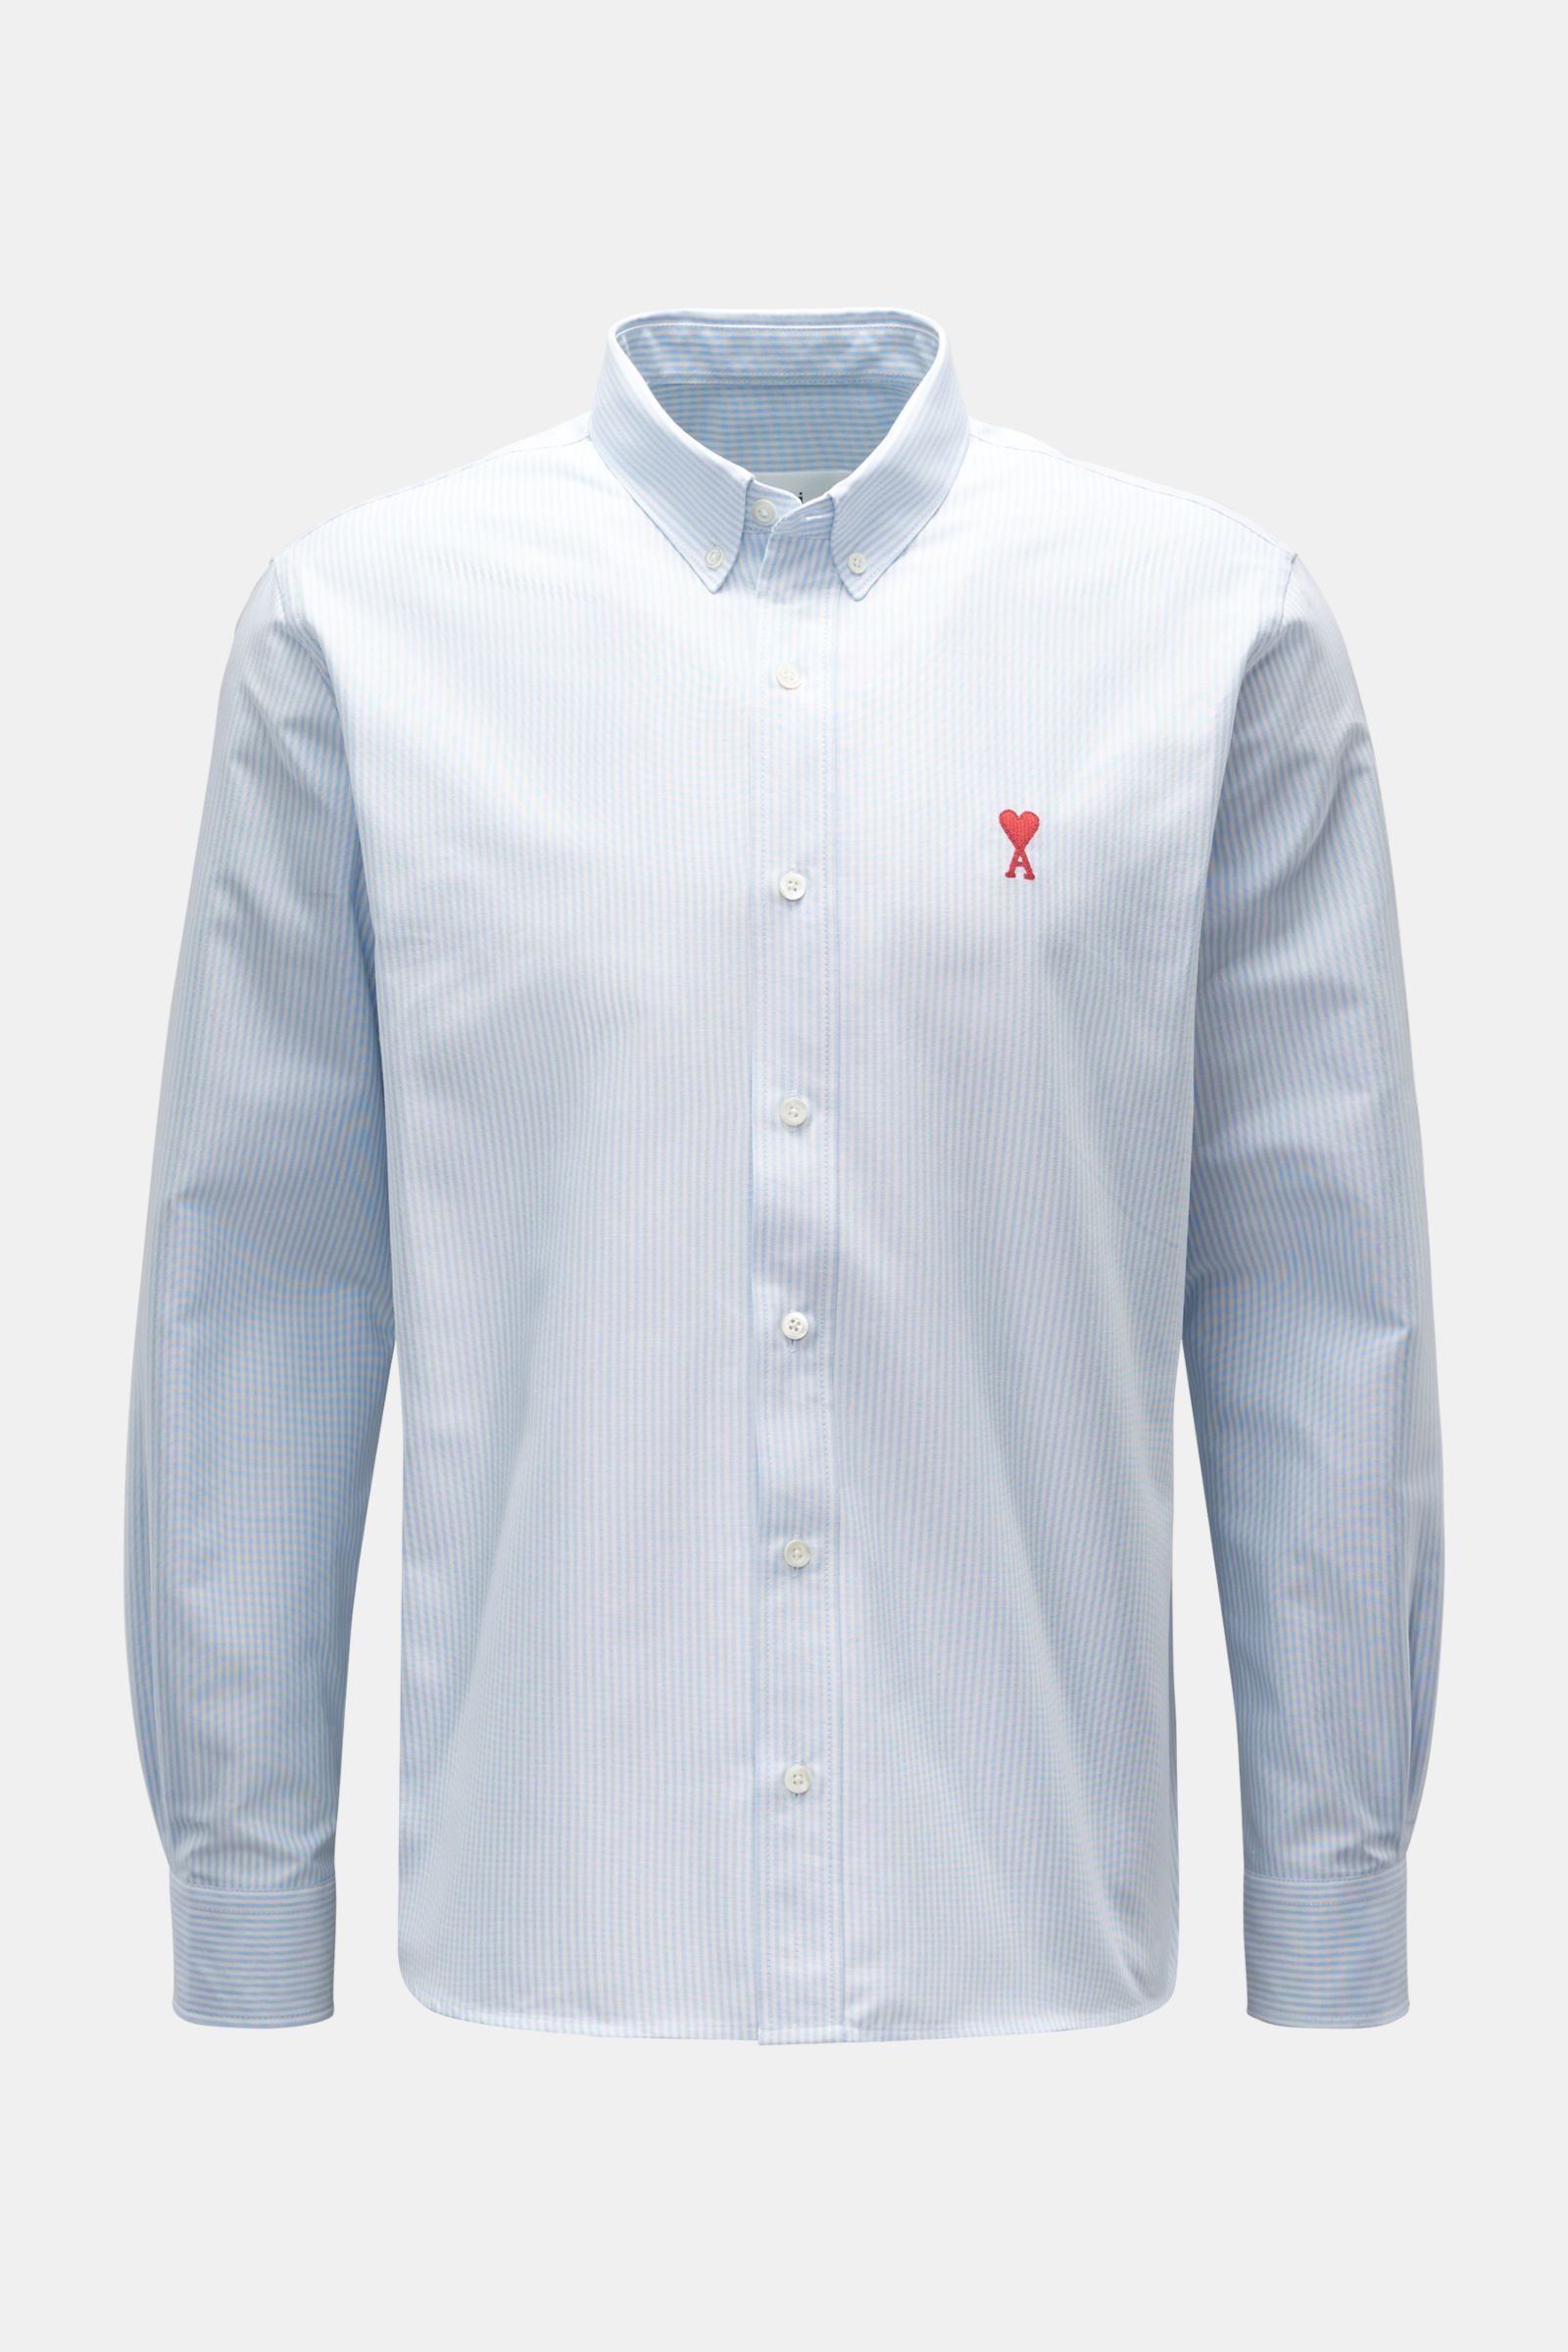 Oxfordhemd Button-Down-Kragen pastellblau/weiß gestreift